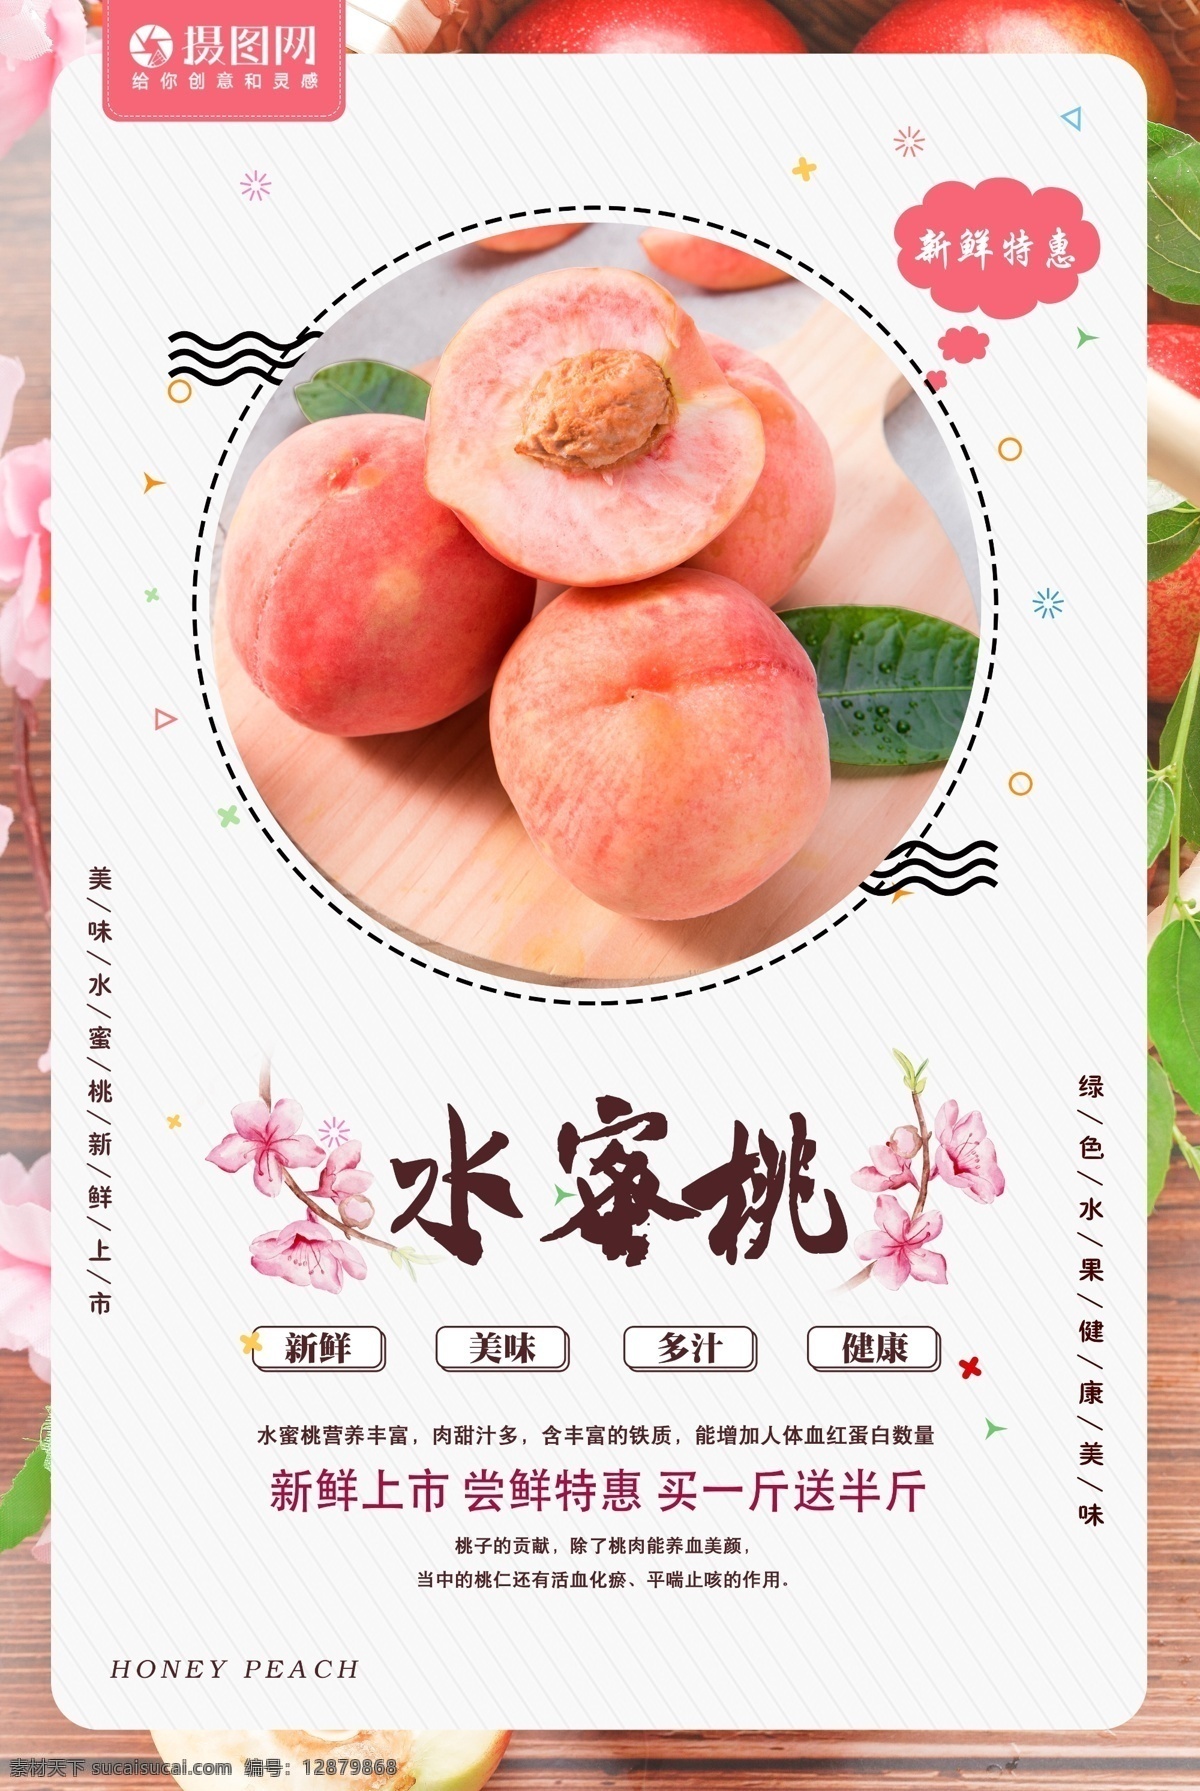 水蜜桃海报 水蜜桃 蜜桃 桃子 桃子海报 水果 水果海报 促销海报 新鲜水果 新鲜水蜜桃 水果促销